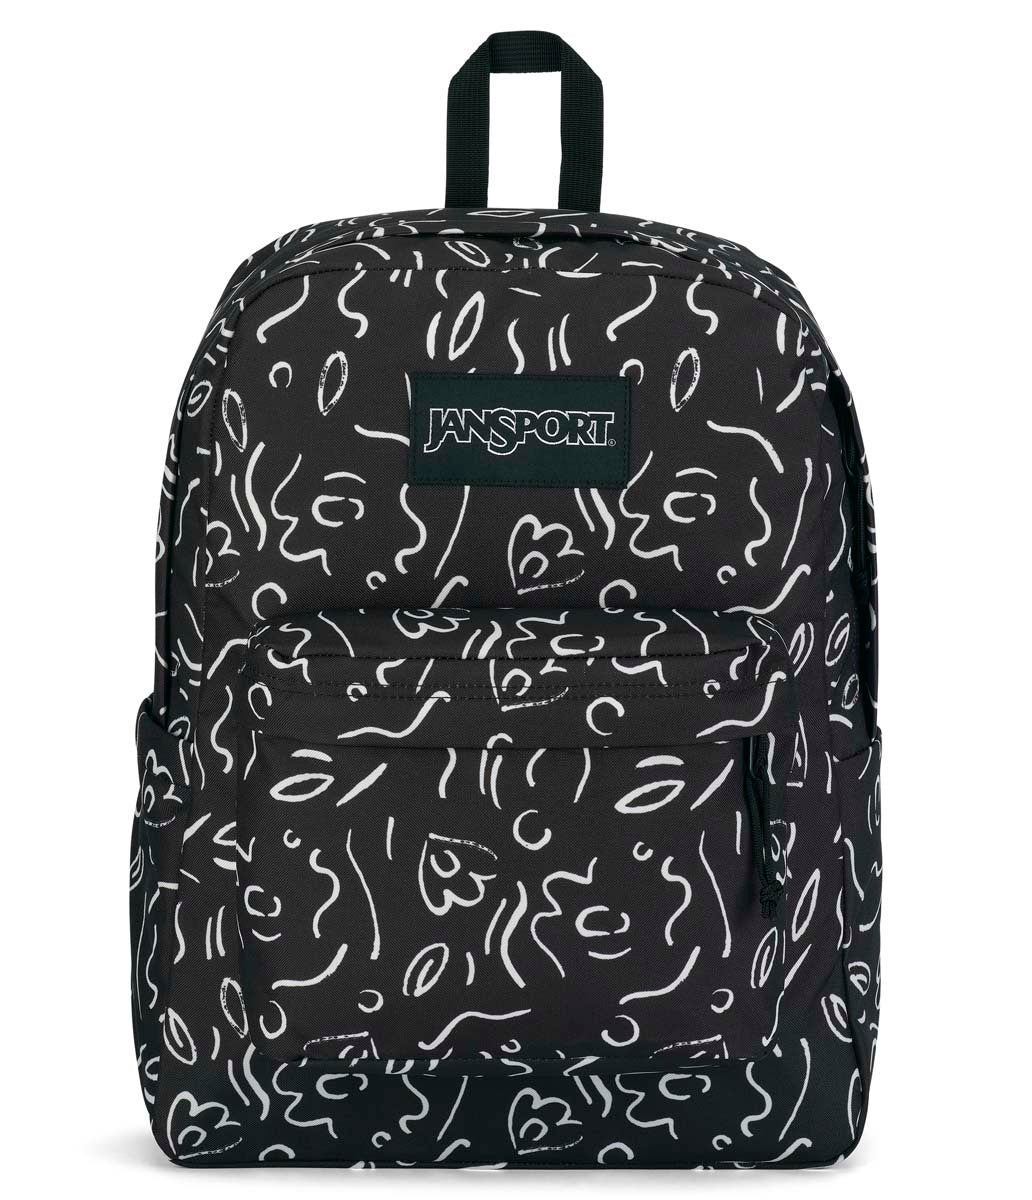 JanSport - Superbreak Backpack 26L